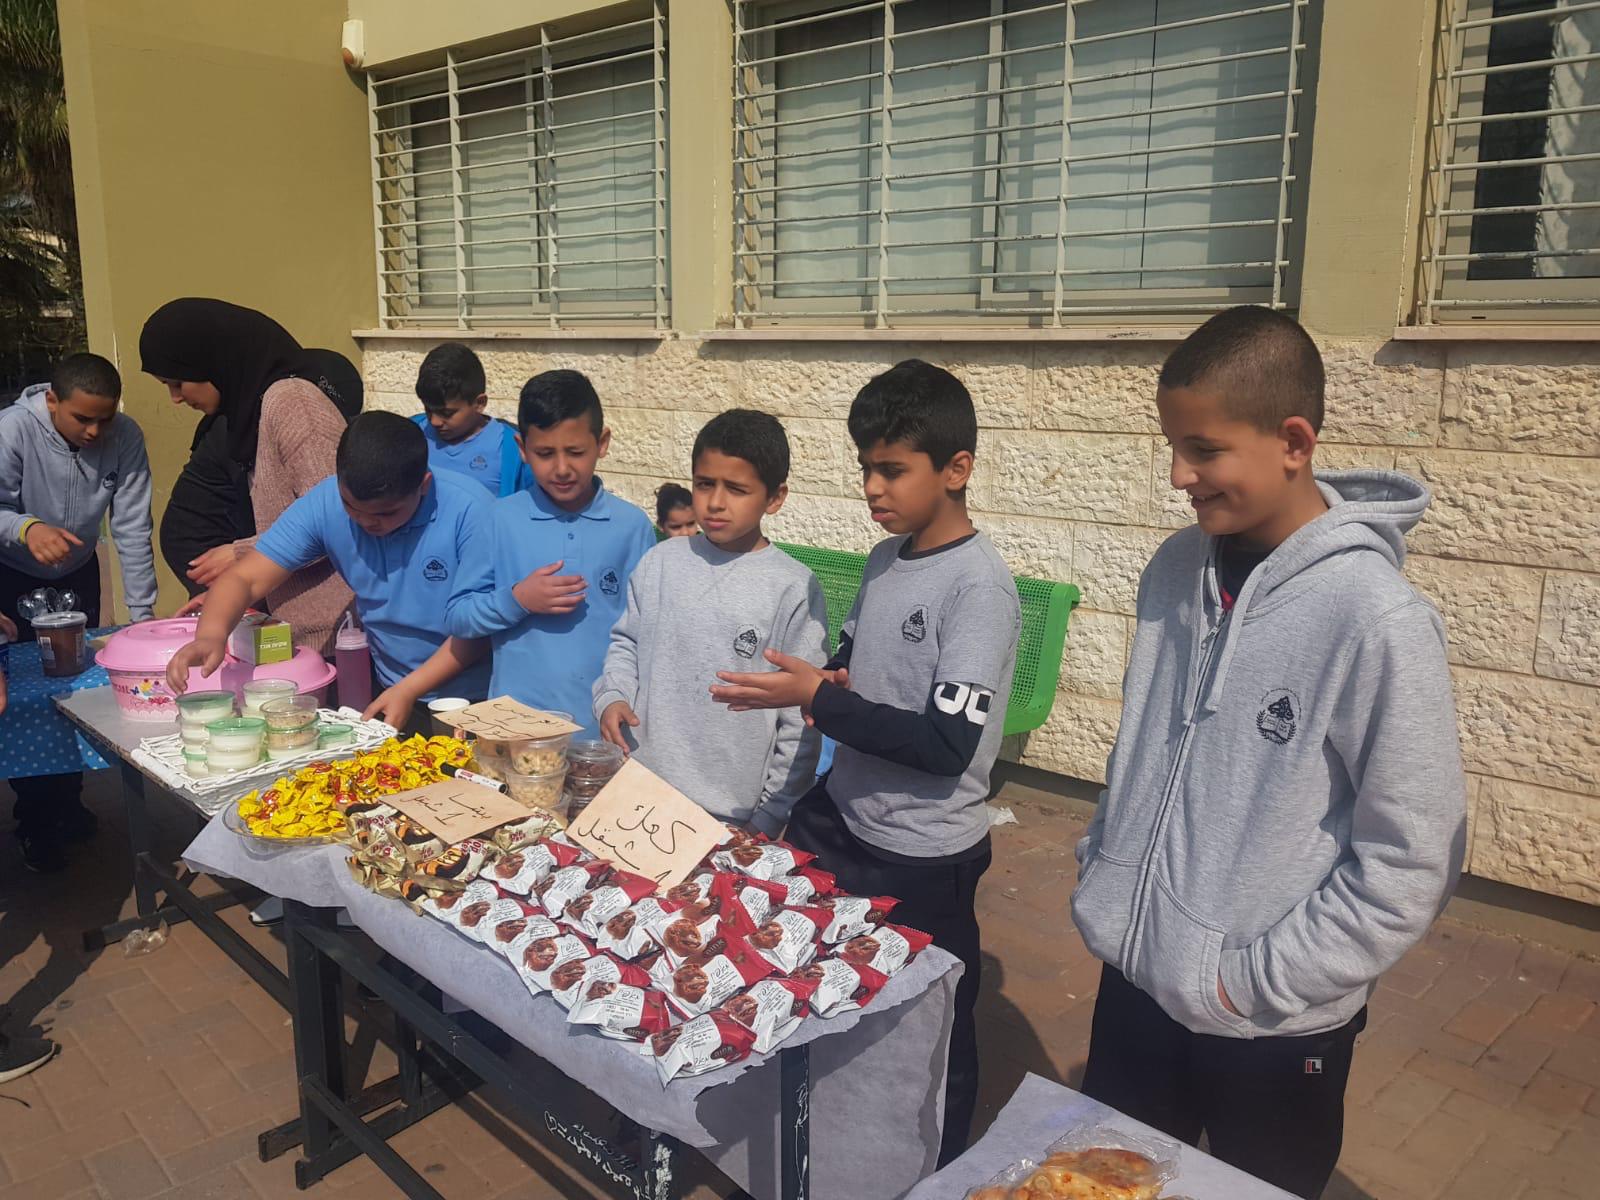  يوم مبيعات في المدرسة الراشدية بمدينة اللد